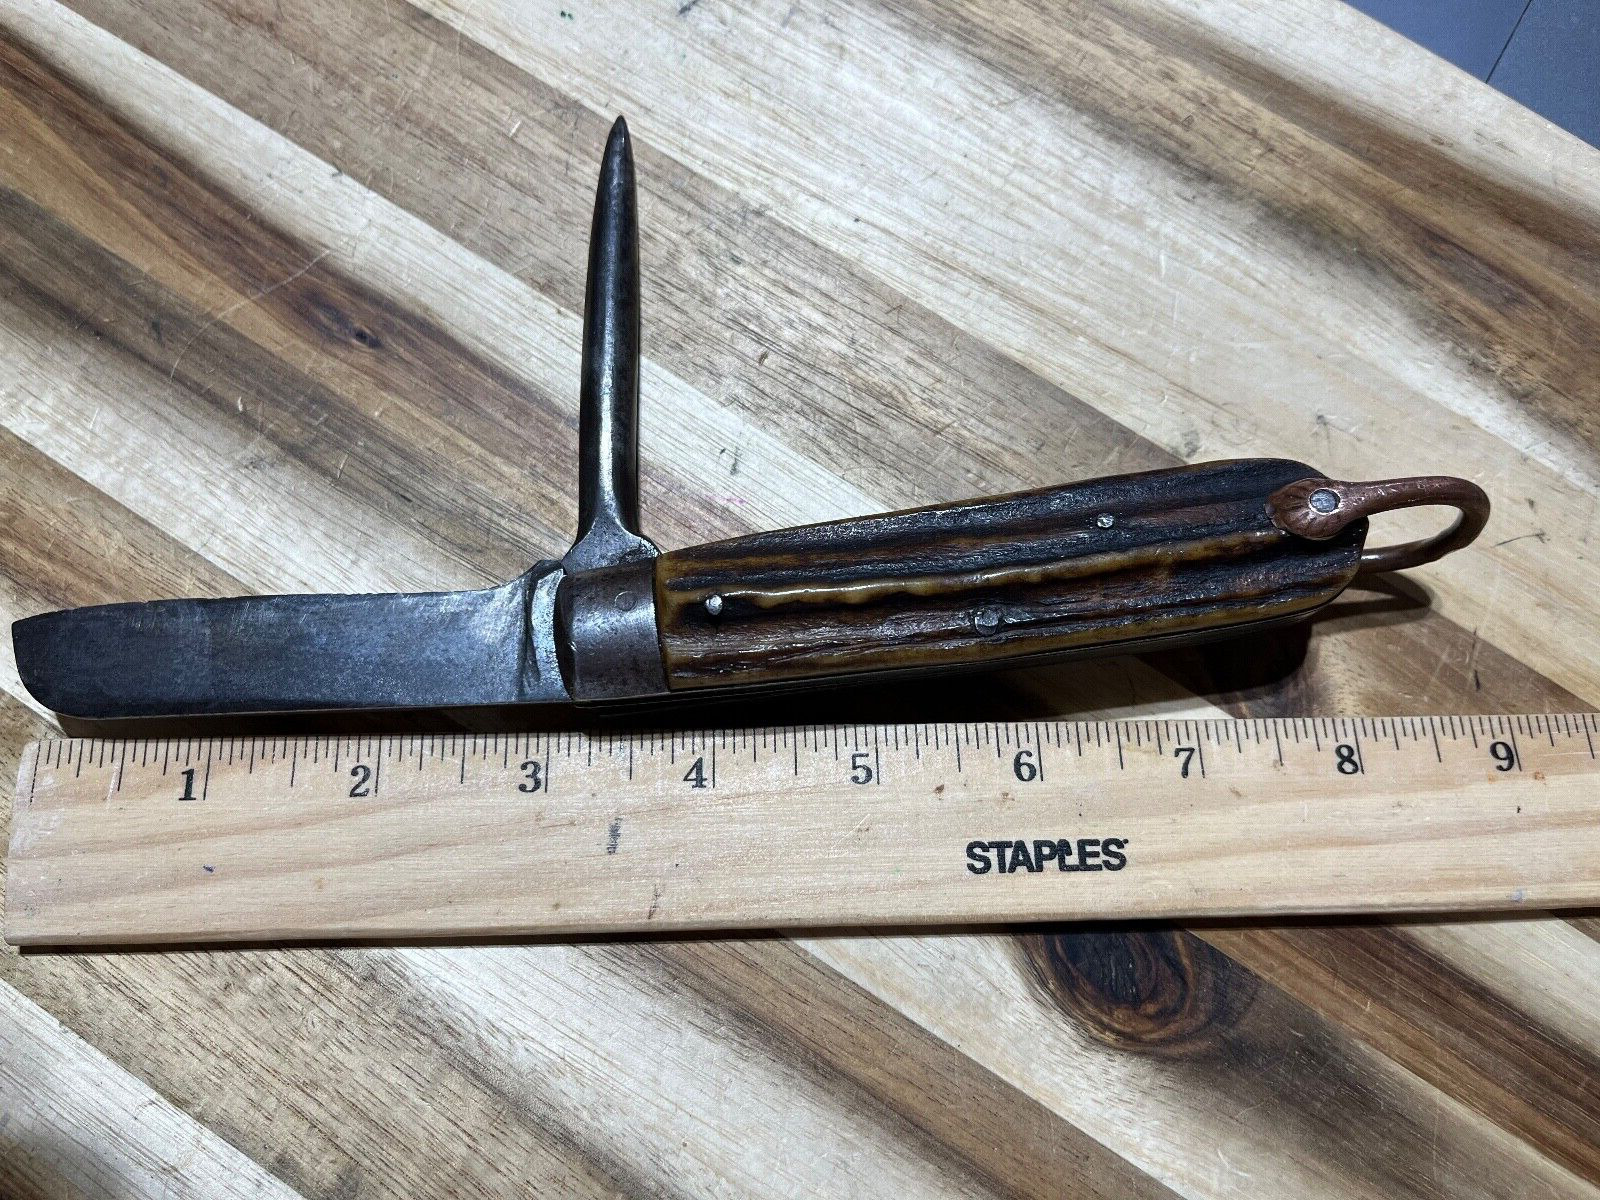 Sheffield England Antique Sailors Marlin Spike knife cir. 1800s (23132)